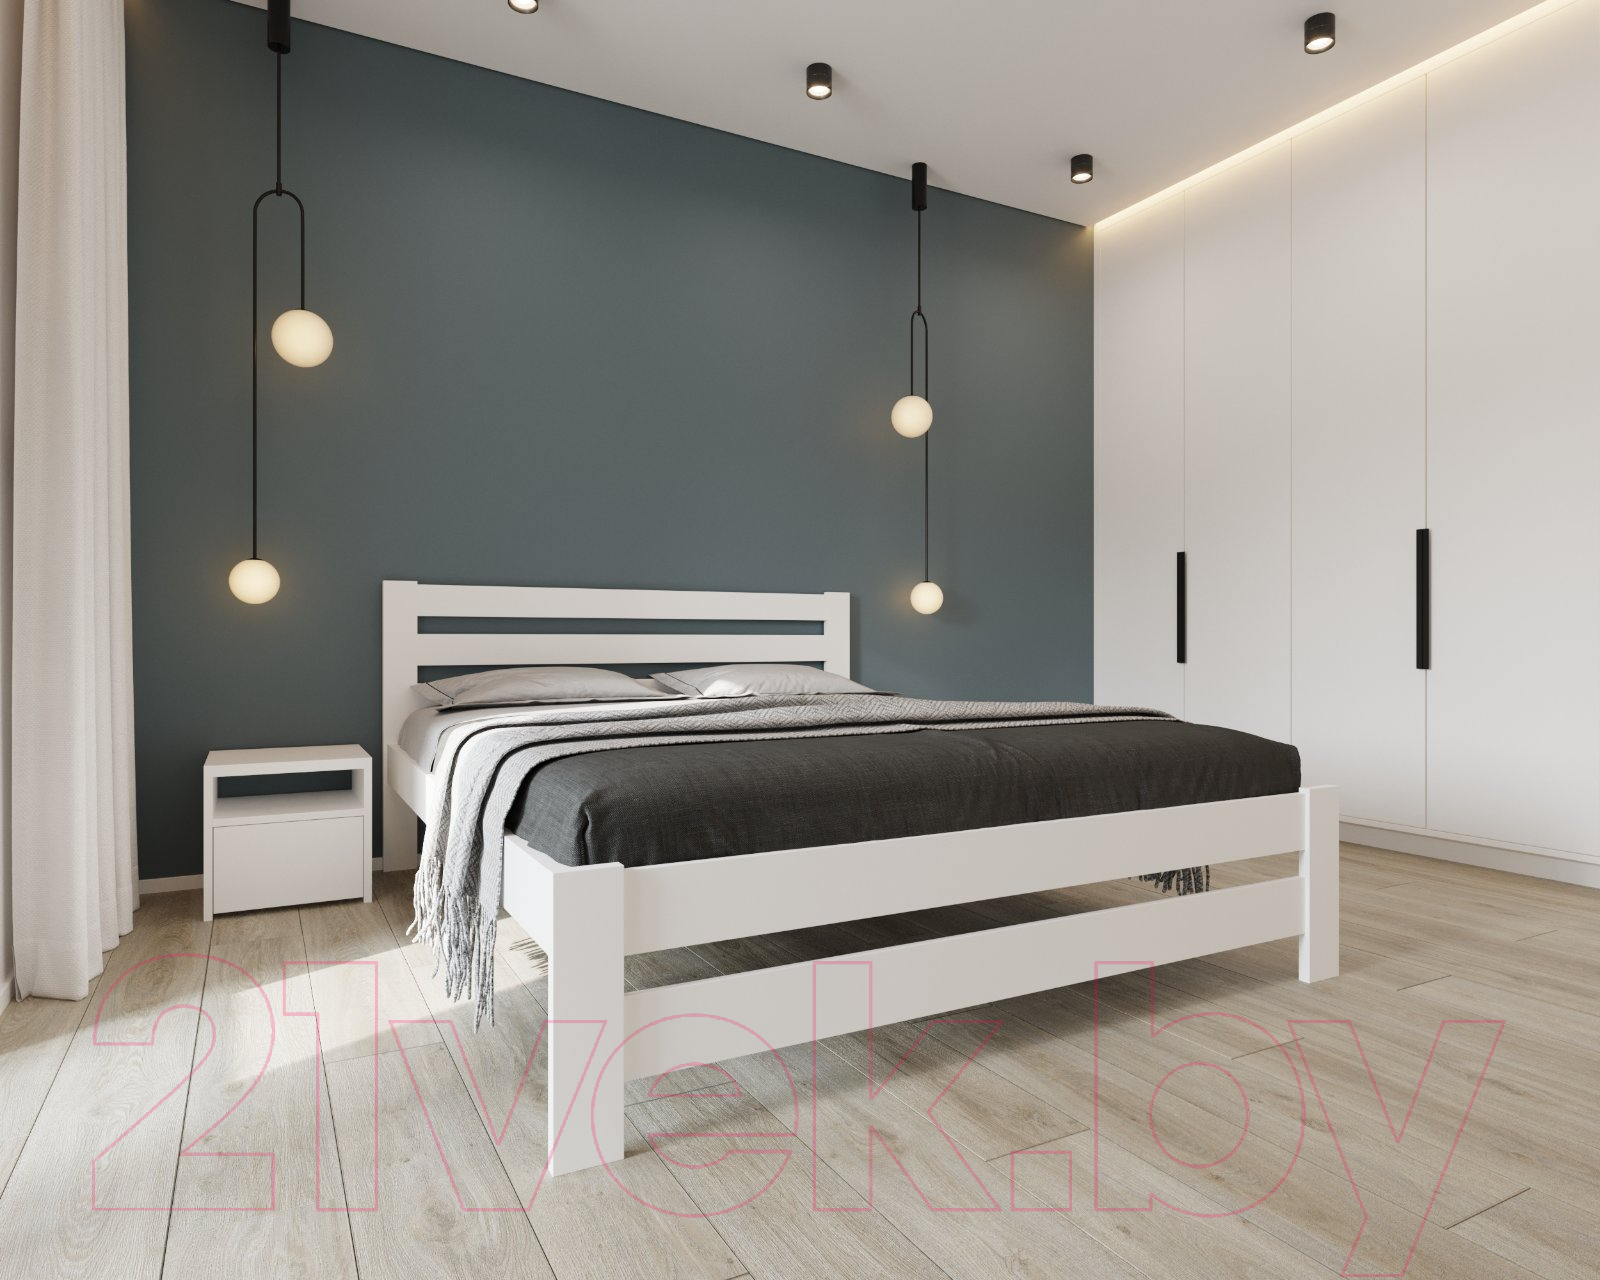 Двуспальная кровать BAMA Palermo (180x200, белый)